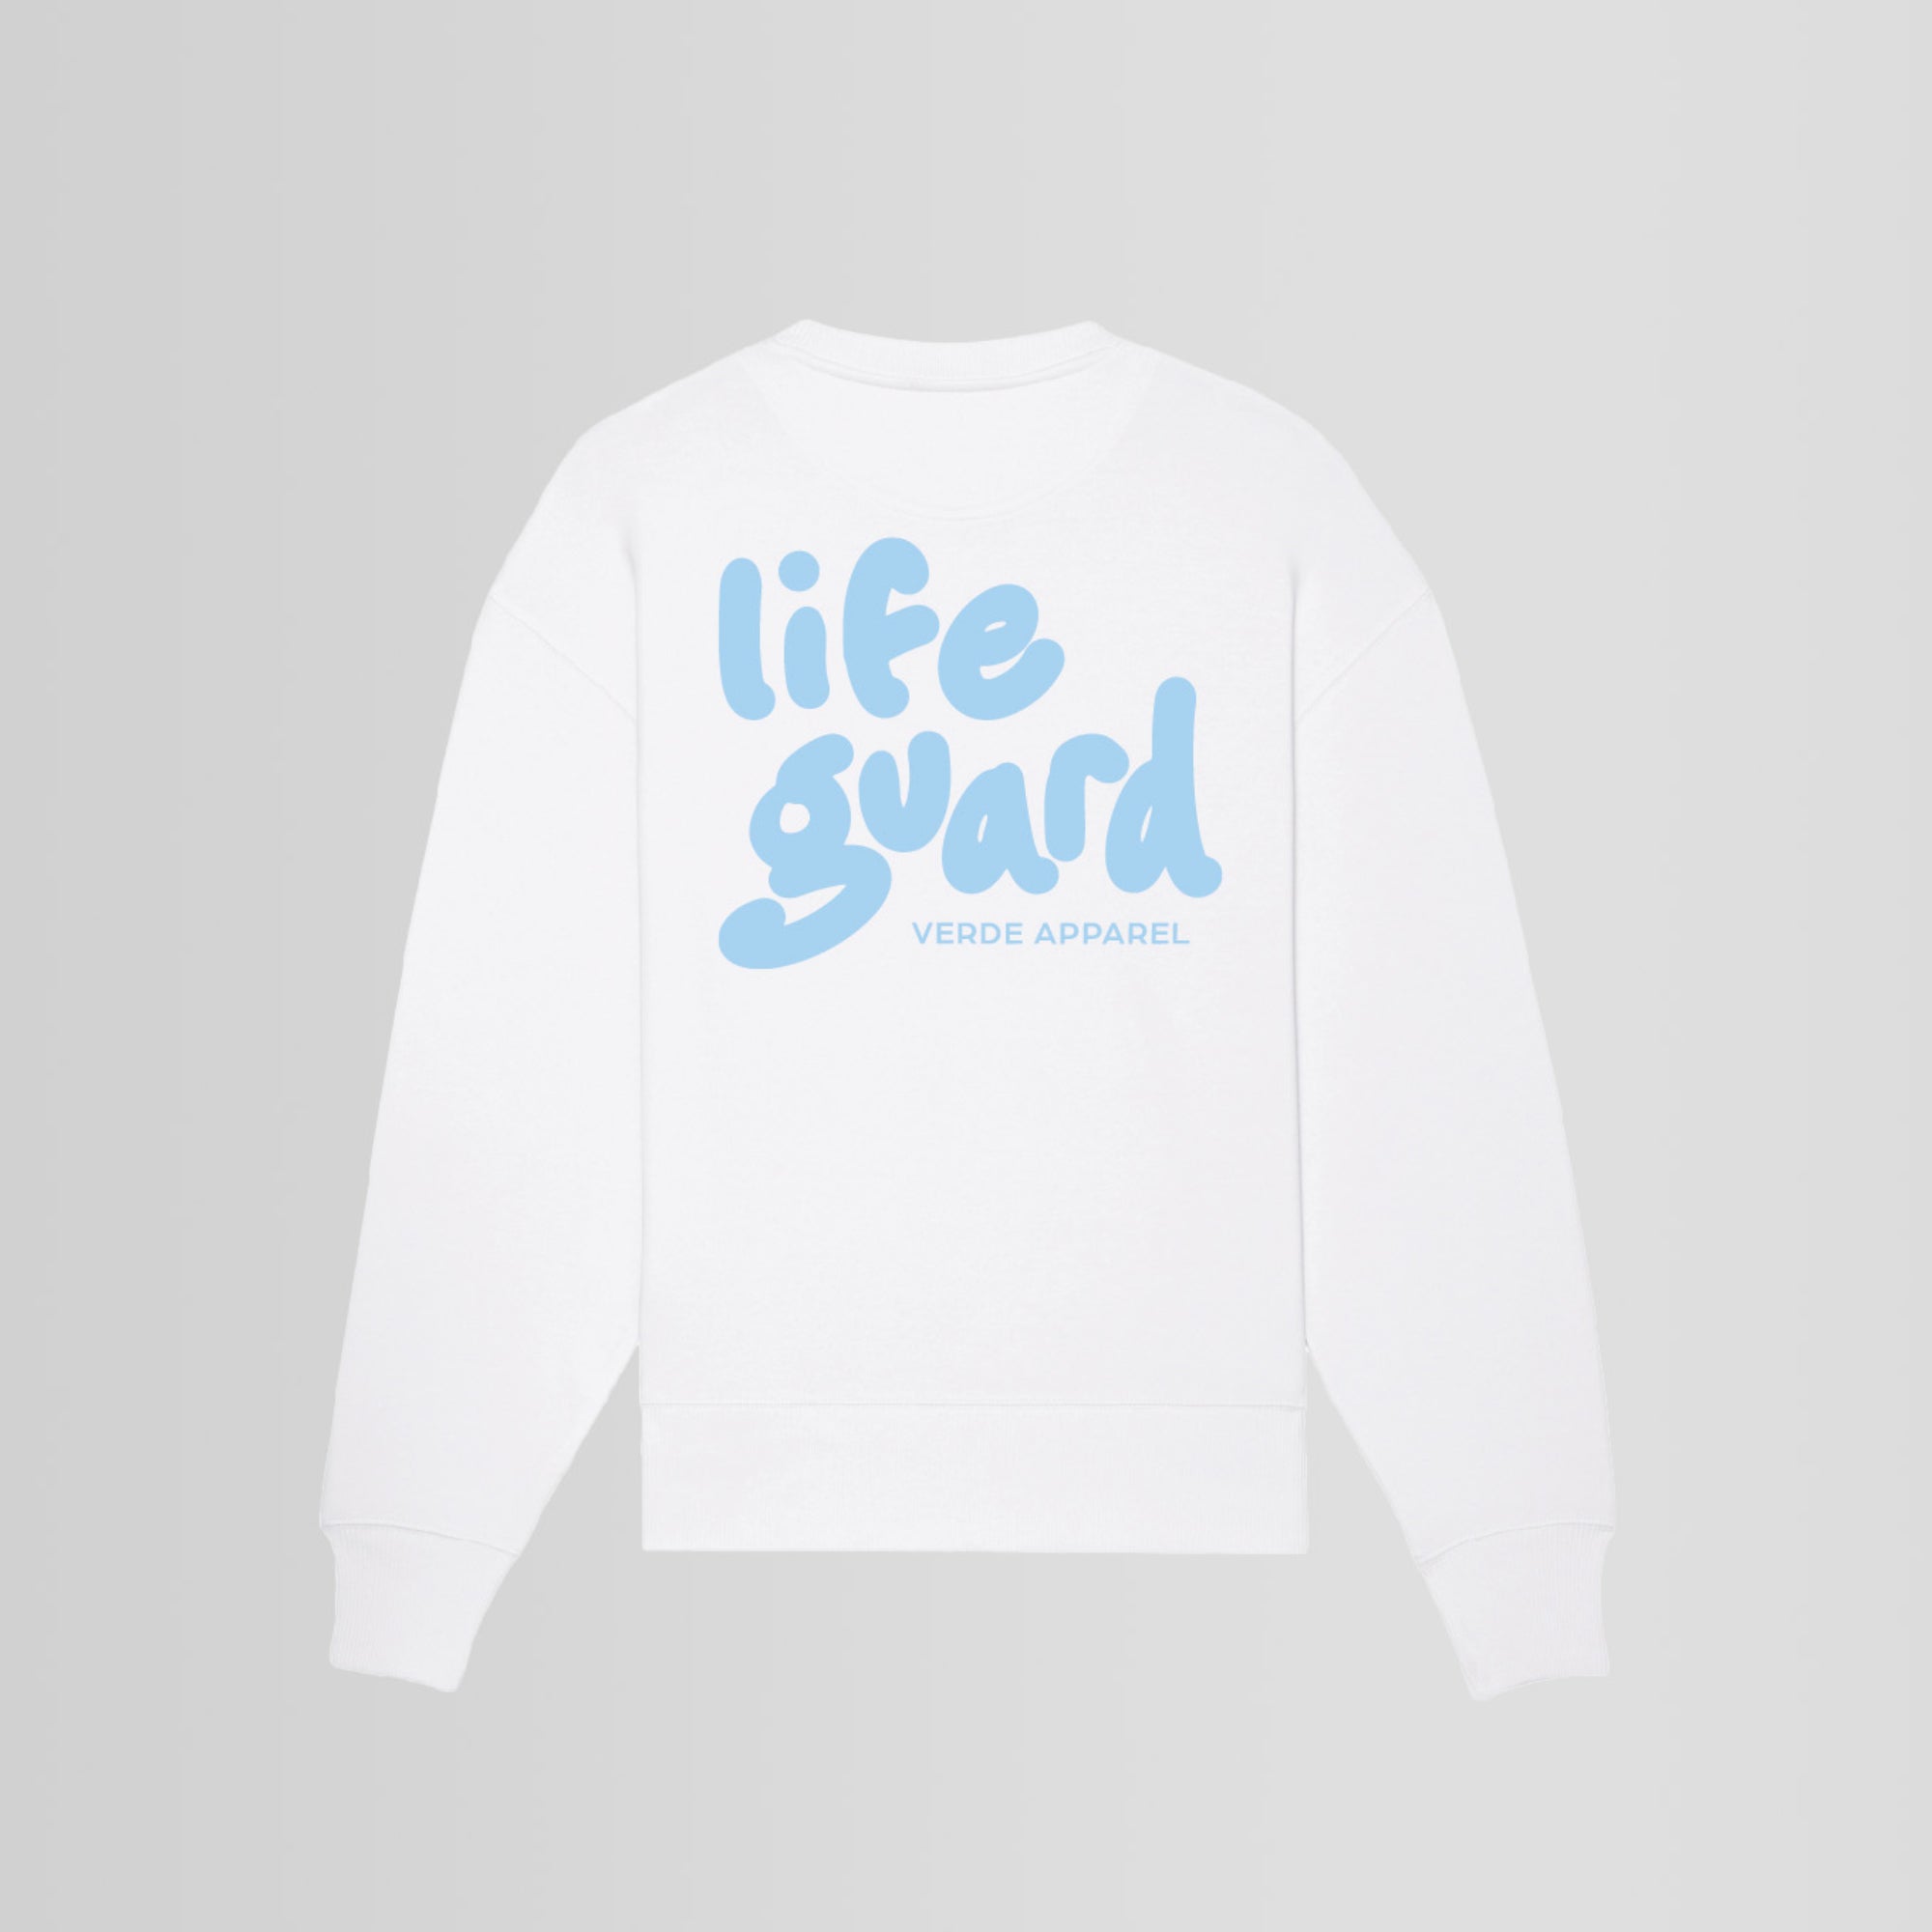 Life Guard Sweatshirt